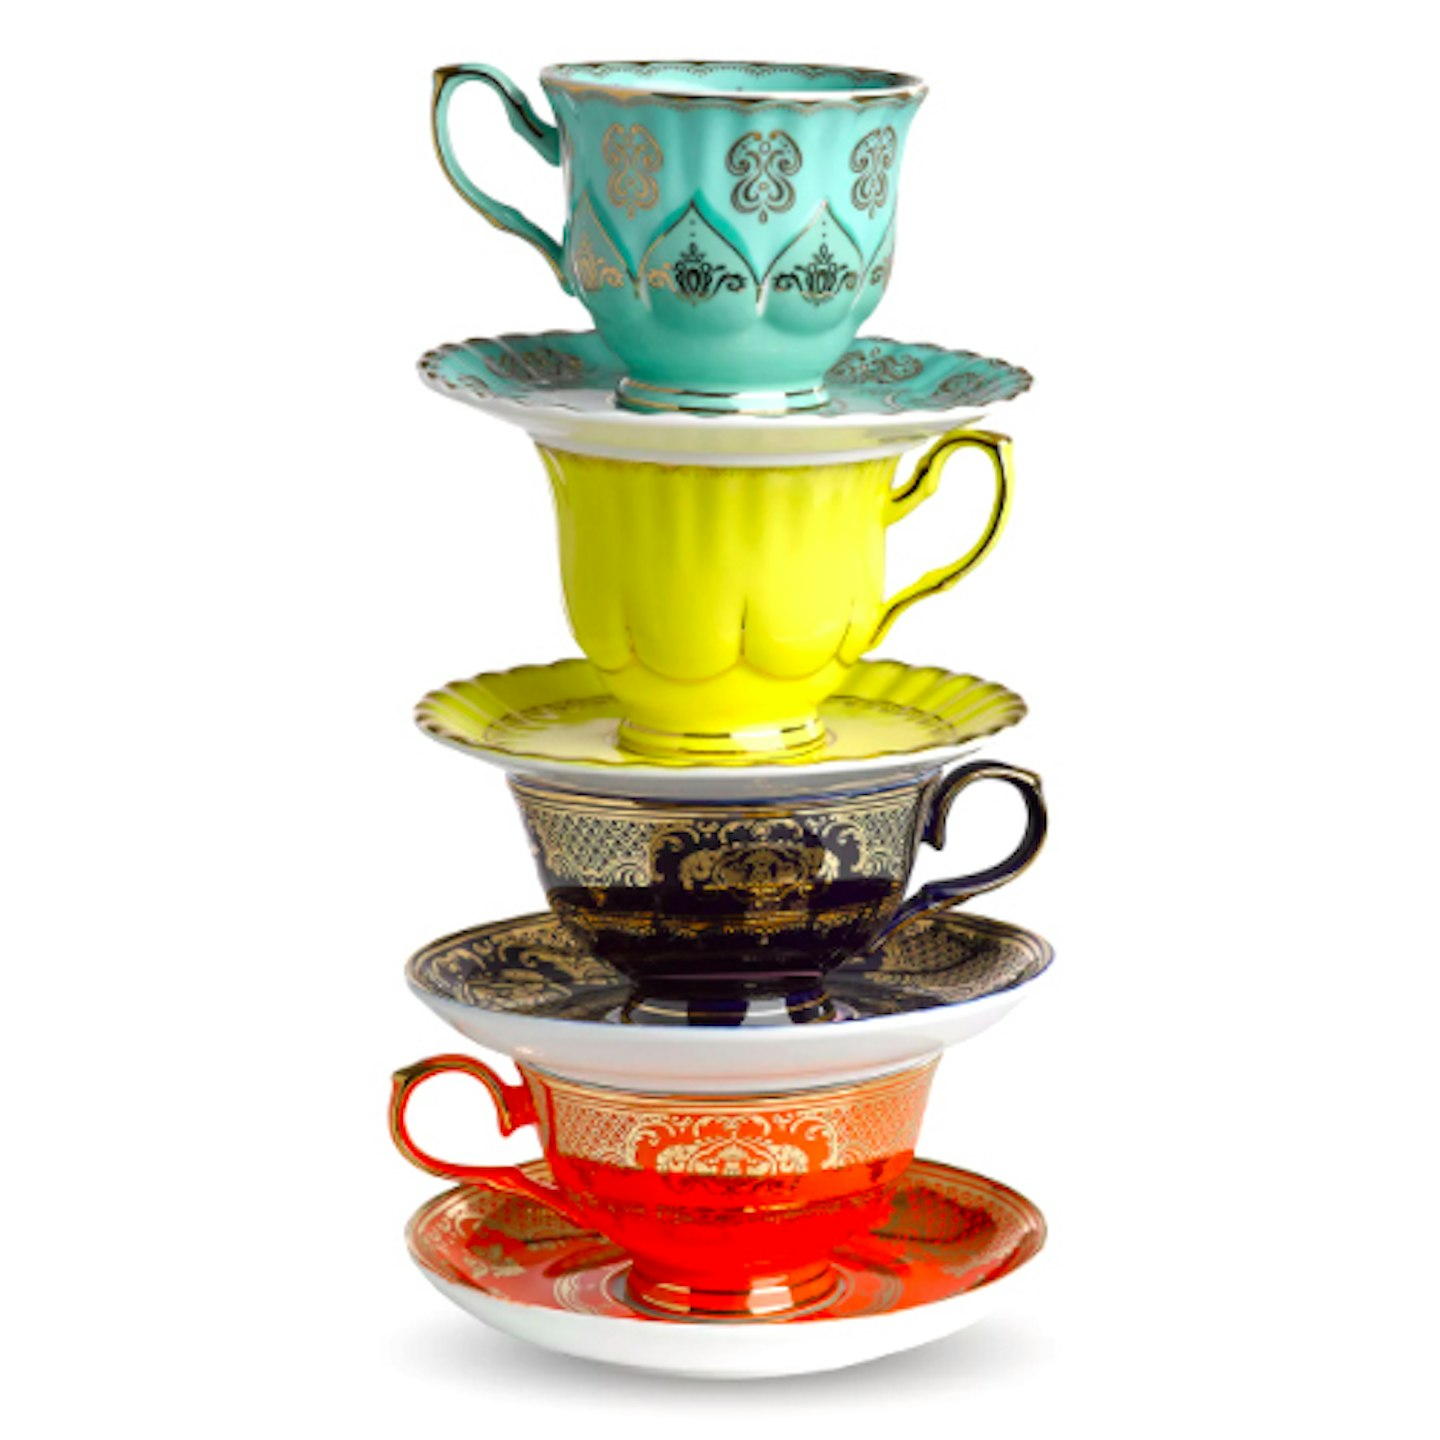 Pols Potten Grandpa Cup and Saucer Tea Set